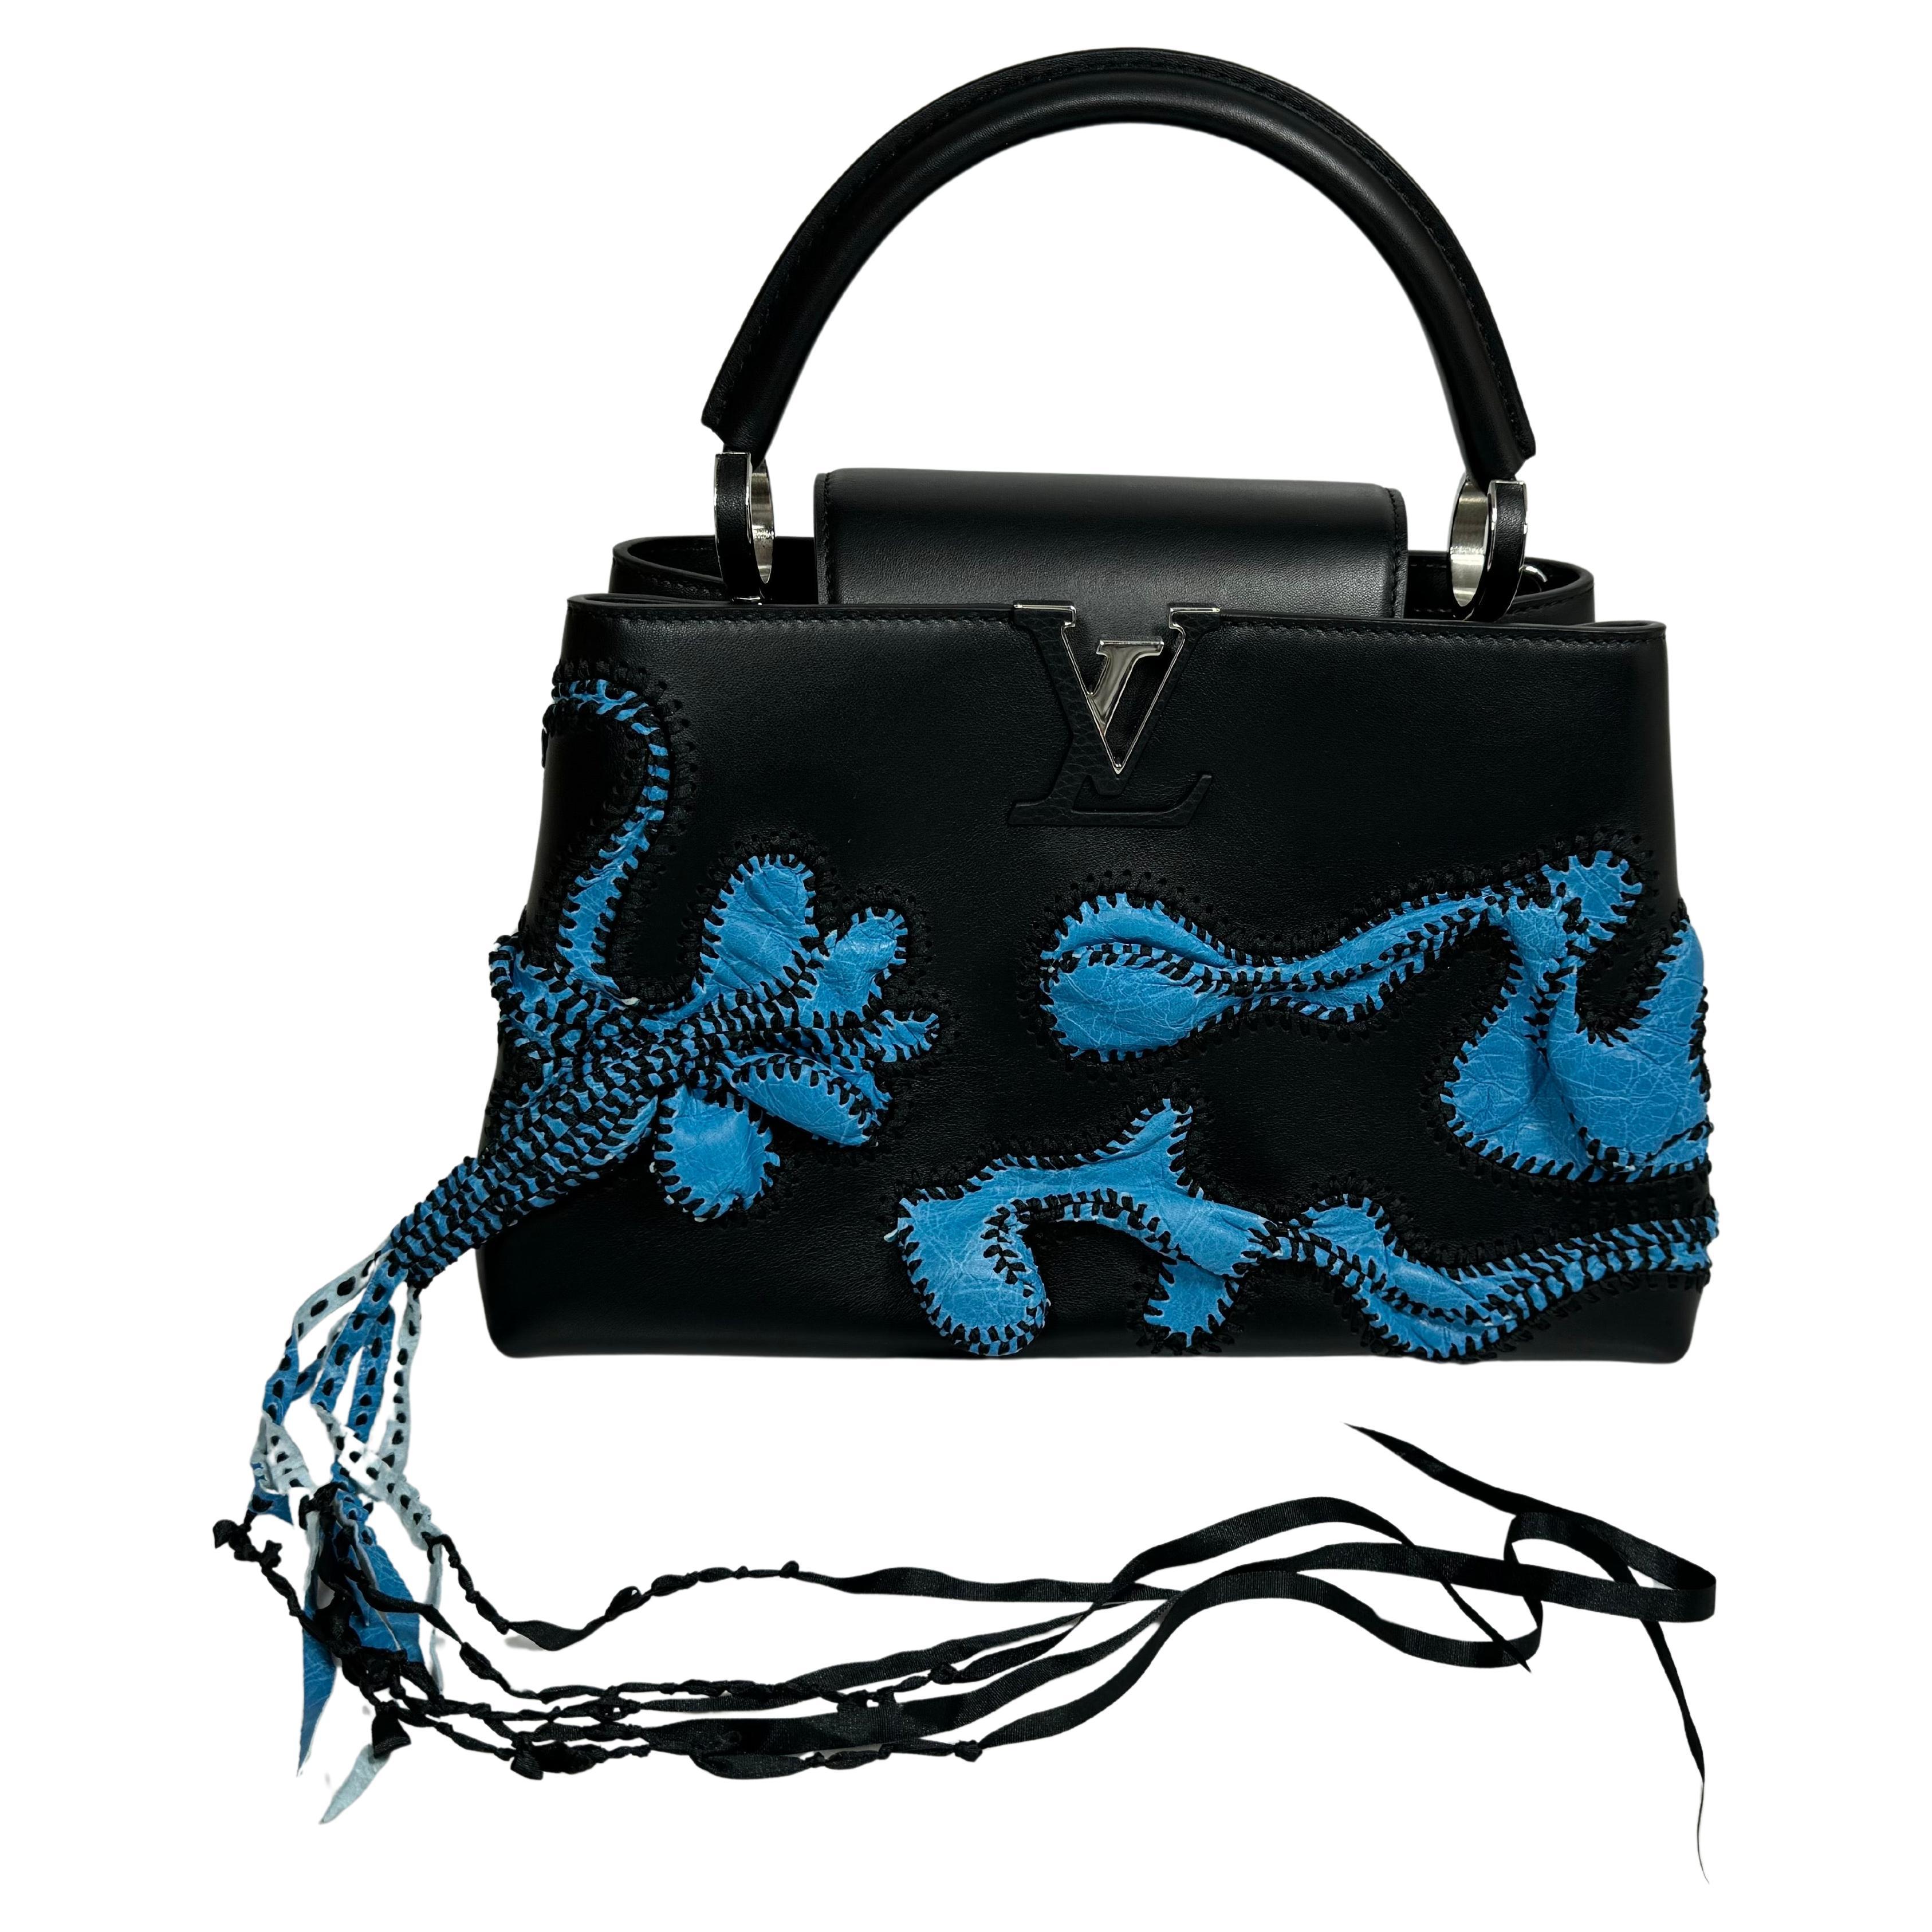 Louis Vuitton Limited Edition Nicholas Hlobo's Artycapucines Handbag-NEW IN BOX en vente